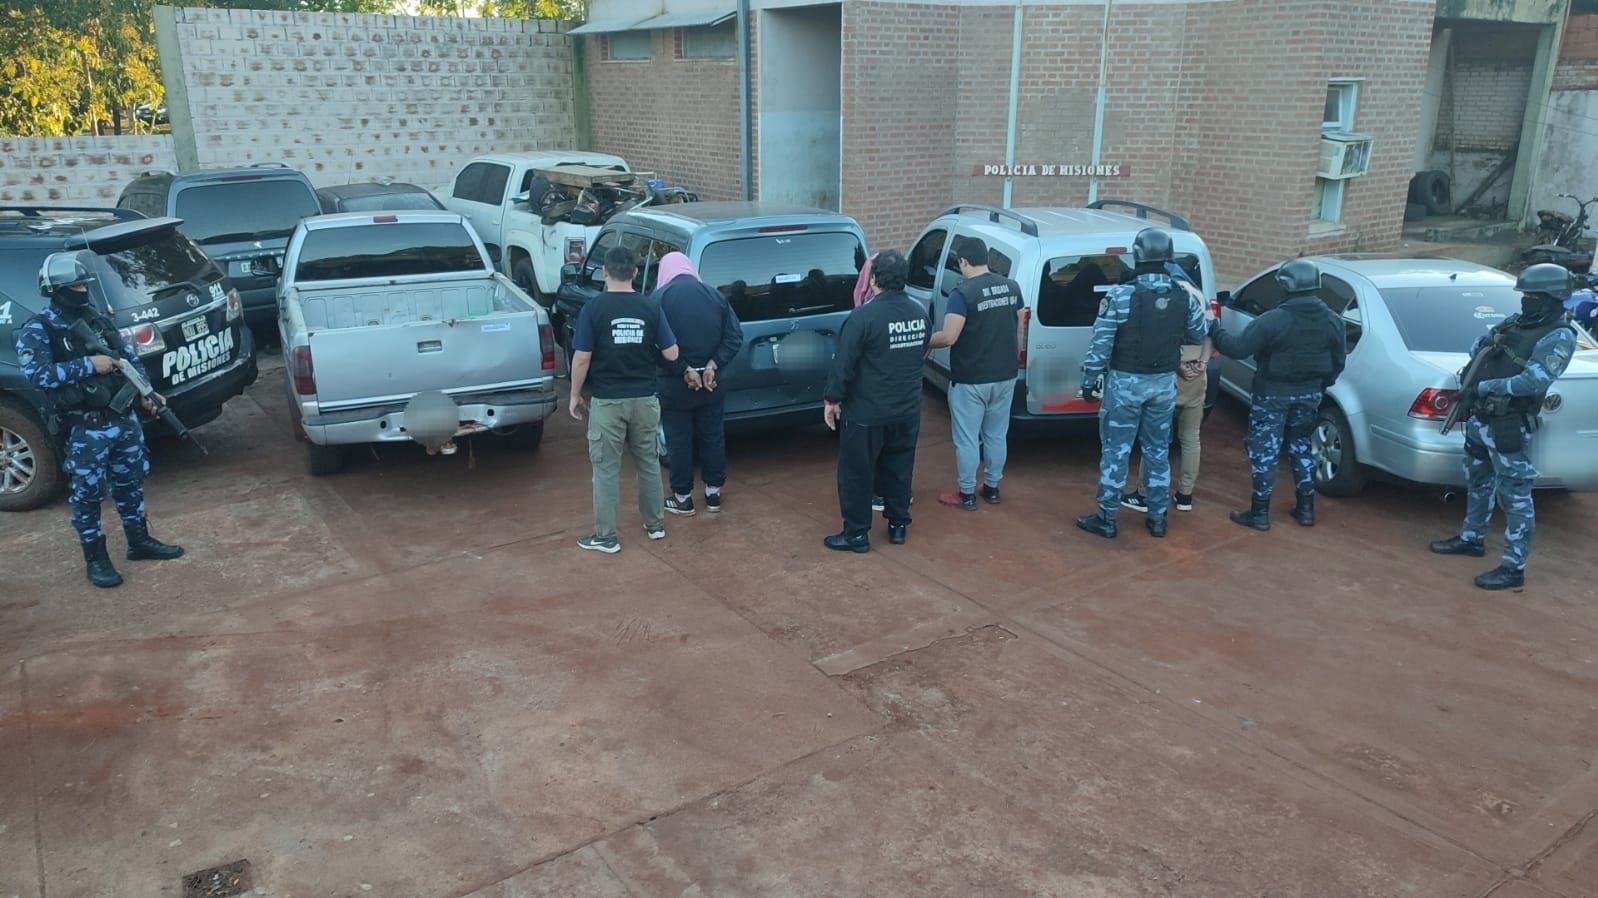 La Policía puso fin a una organización criminal y recuperó varios vehículos